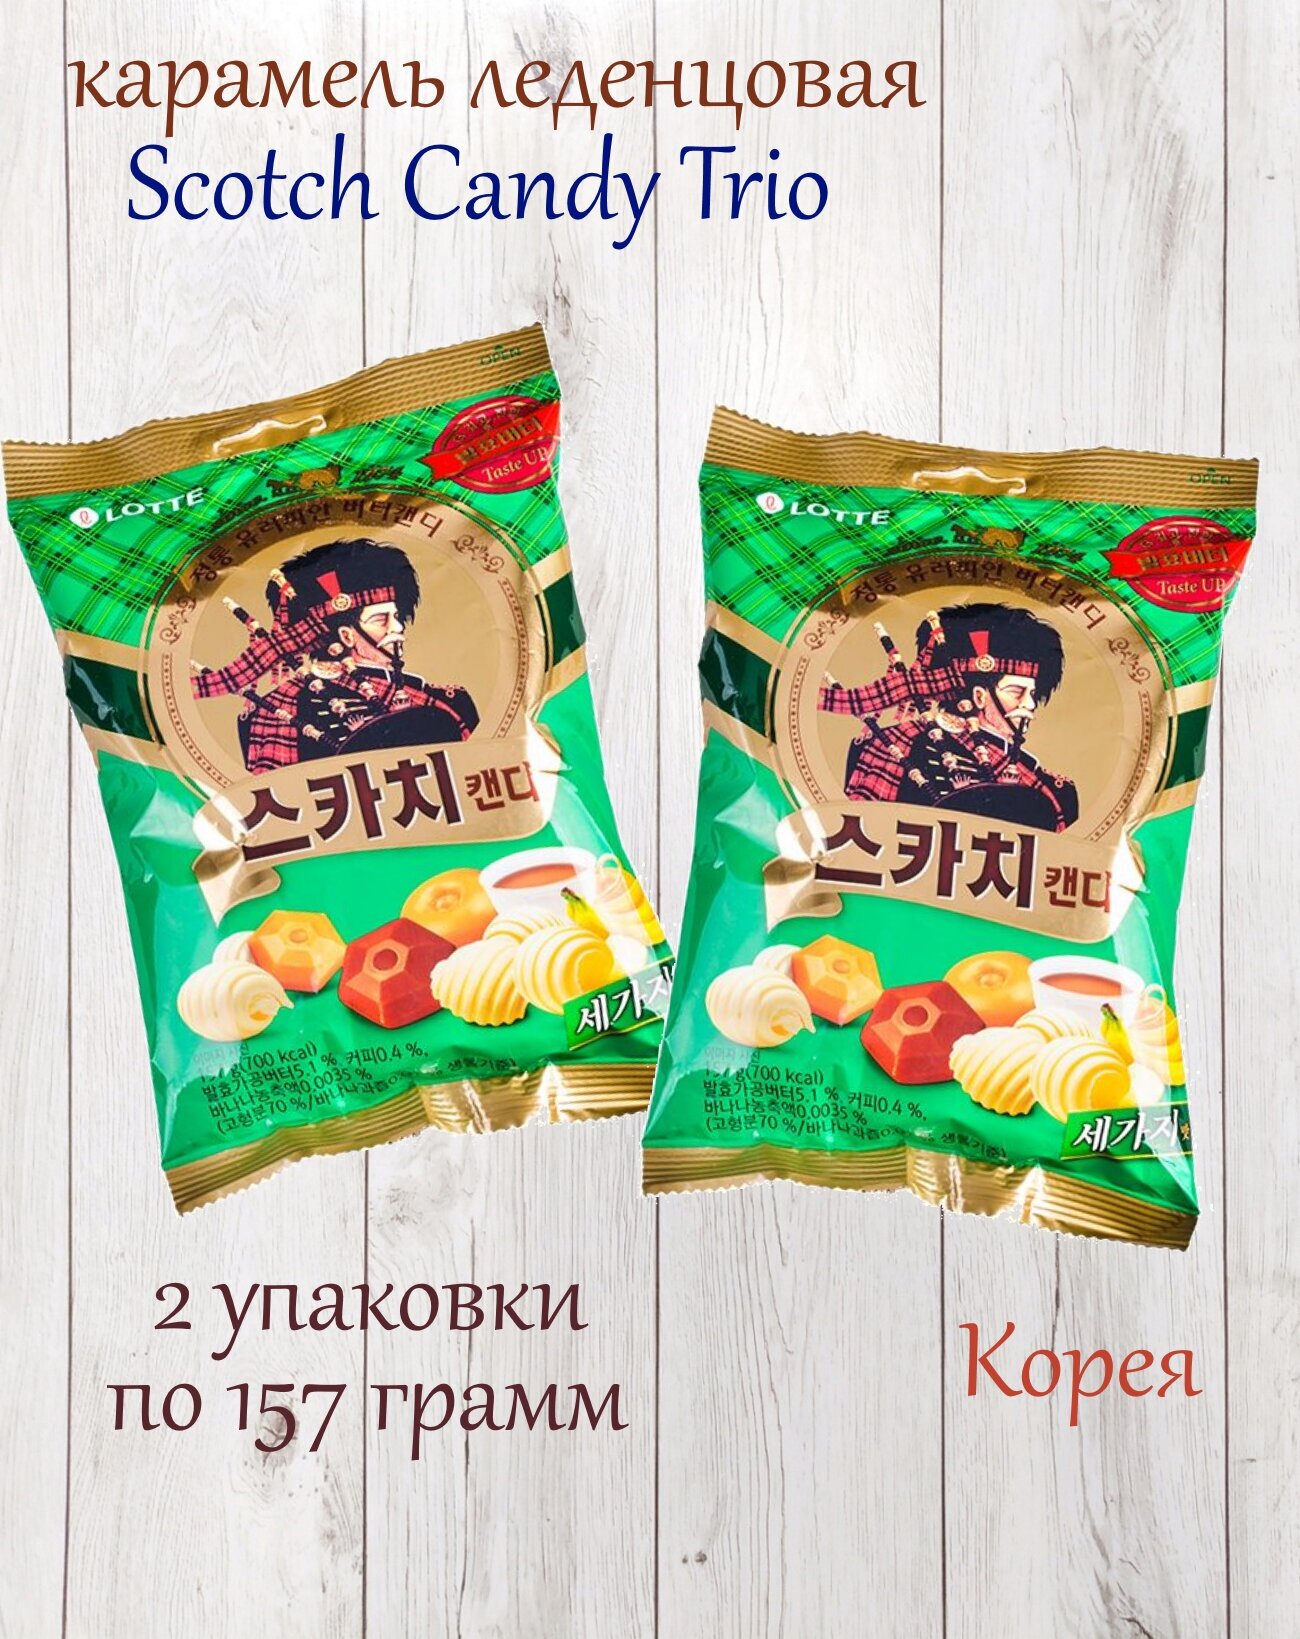 Карамель леденцовая Lotte Scotch Candy Trio, ассорти, 2 упаковки по 157 грамм - фотография № 1